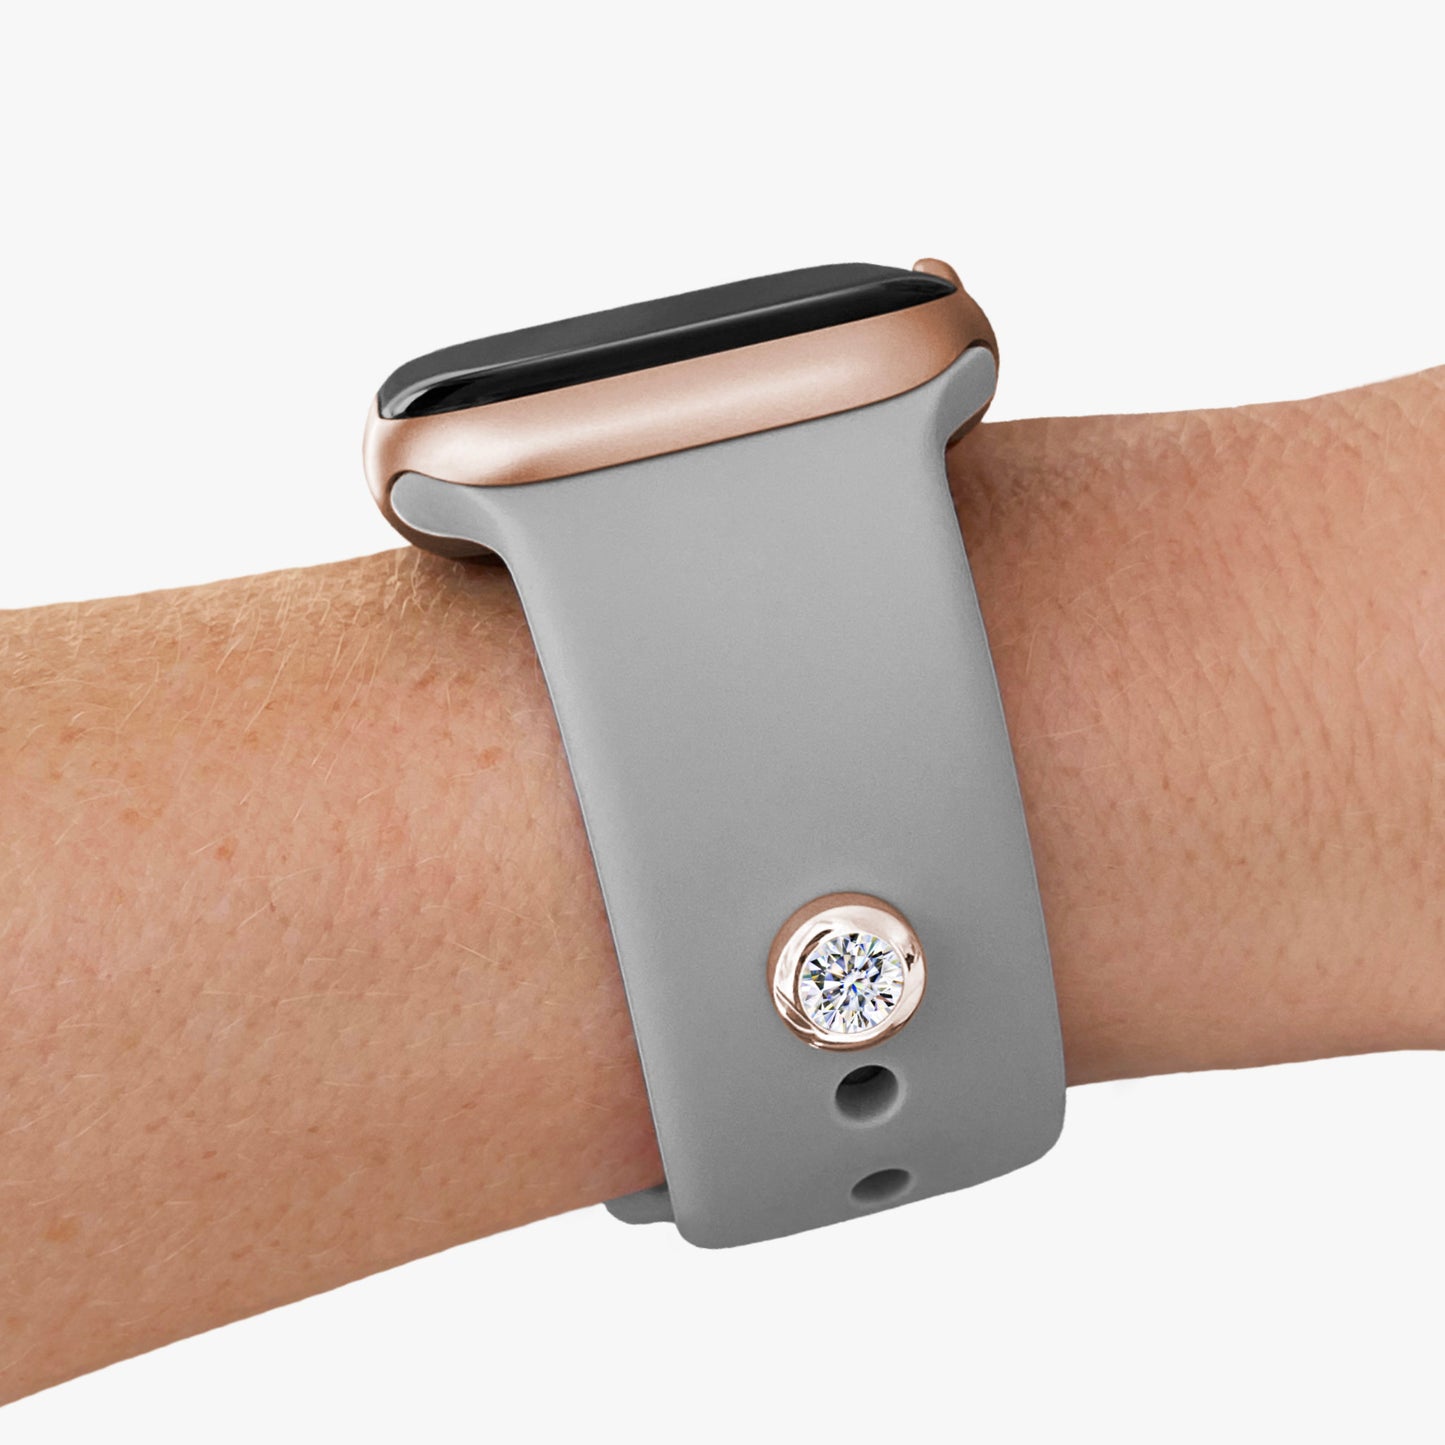 Pamoro® Charm für Apple Watch Sportarmbänder - Schmuck in Silber 24k Roségold plattiert mit Cubic Zirkonia in weiß - Schraubmechanik